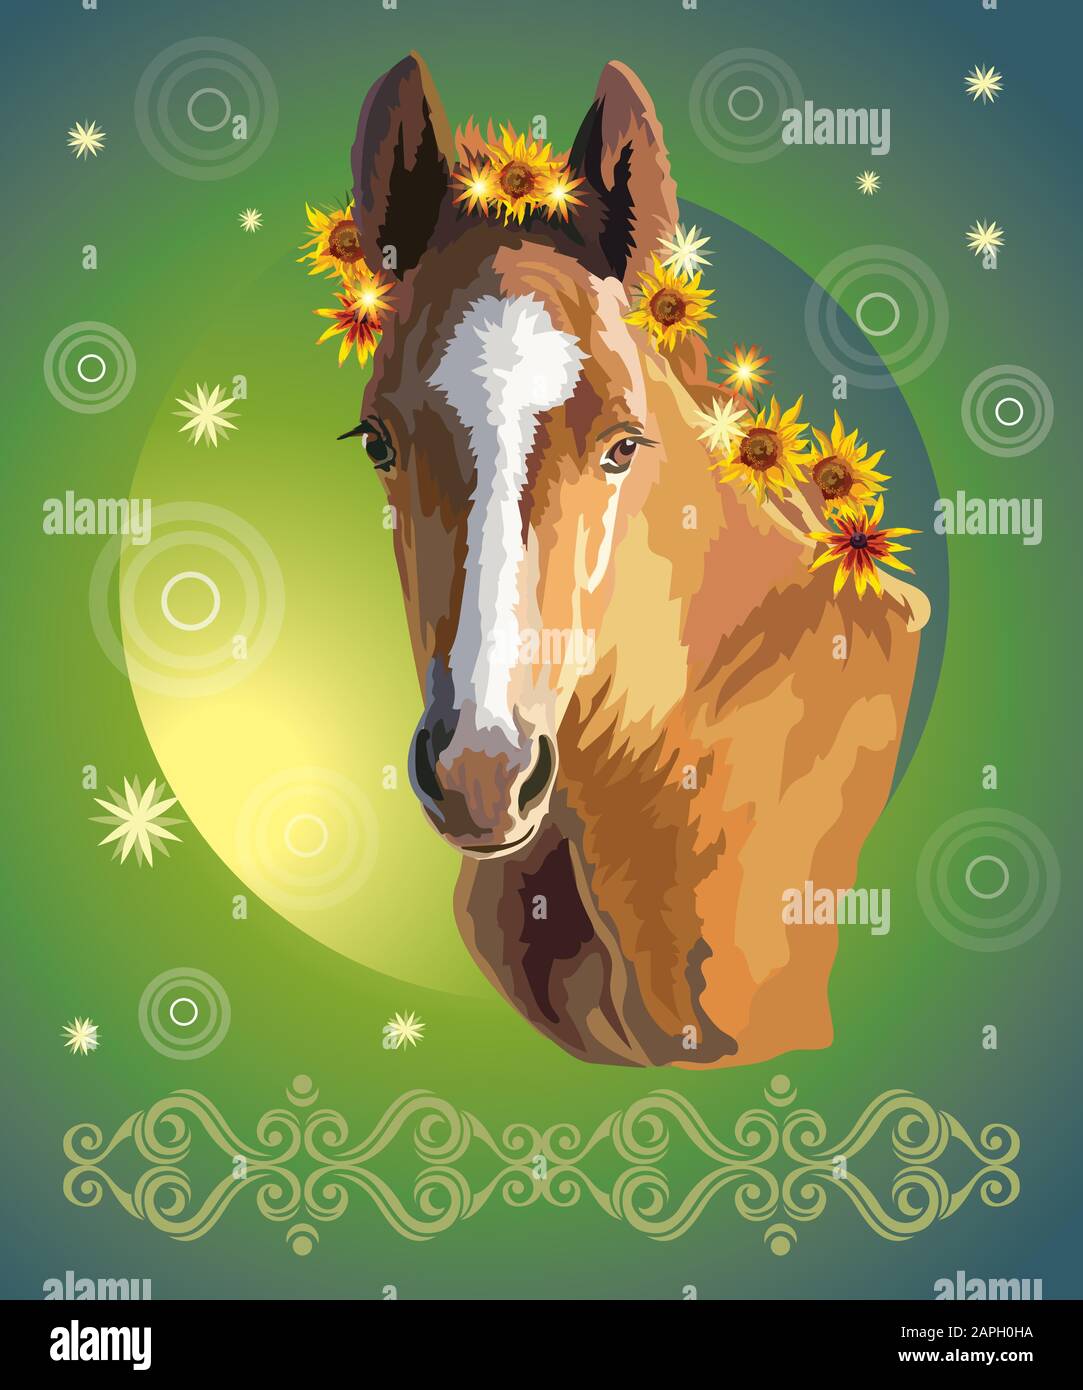 Lustige Fohlen, Vektor bunt realistische Illustration. Portrait von Bay kleines Pferd mit Sonnenblumen in Mähne isoliert auf grünem Gradientenhintergrund. Bild Stock Vektor